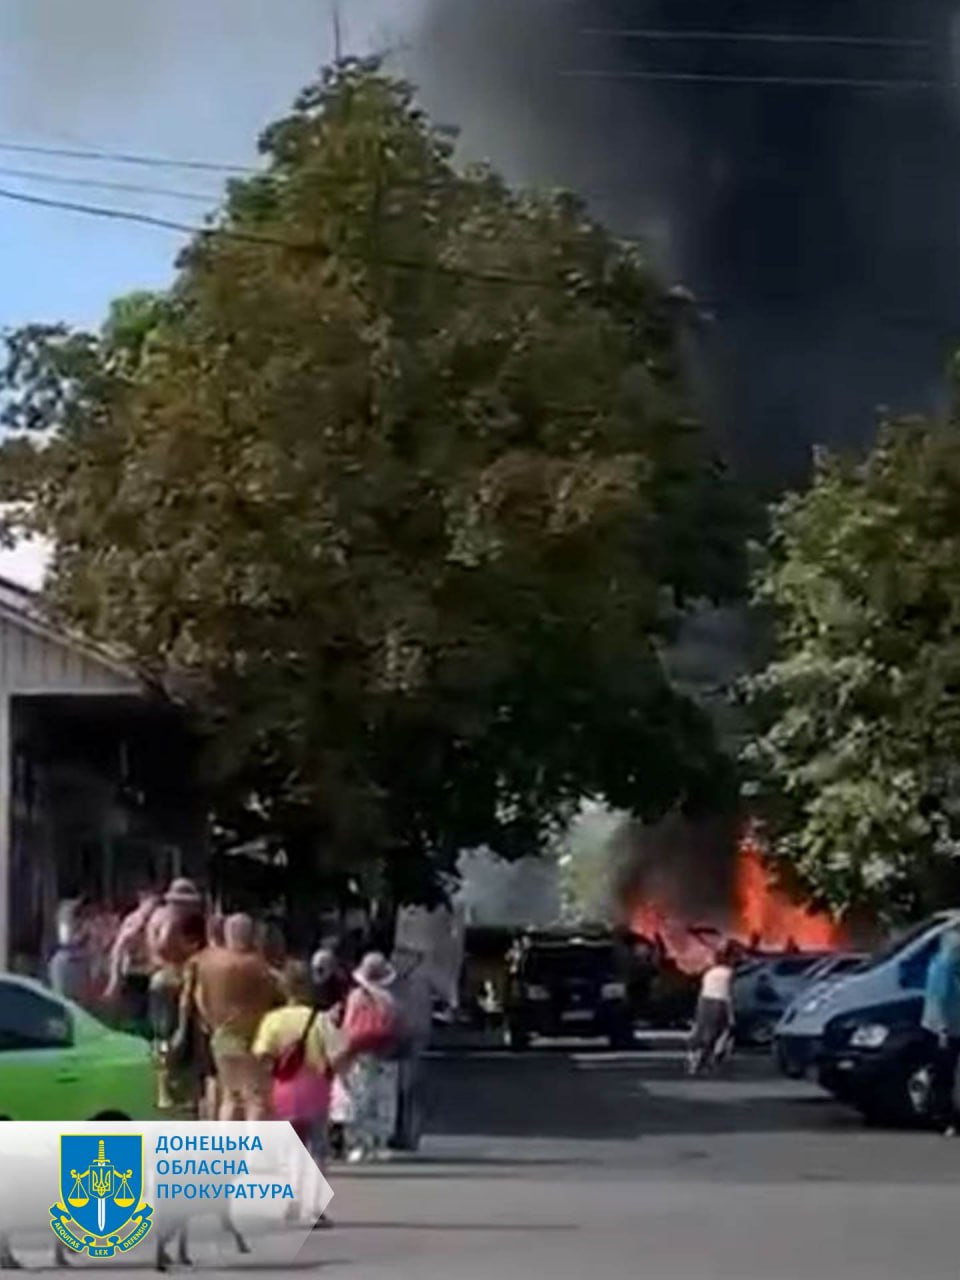 FOTO/VIDEO Atac masiv asupra unei piețe din orașul ucrainean Konstantinovka: Cel puțin 16 morți și 31 răniți